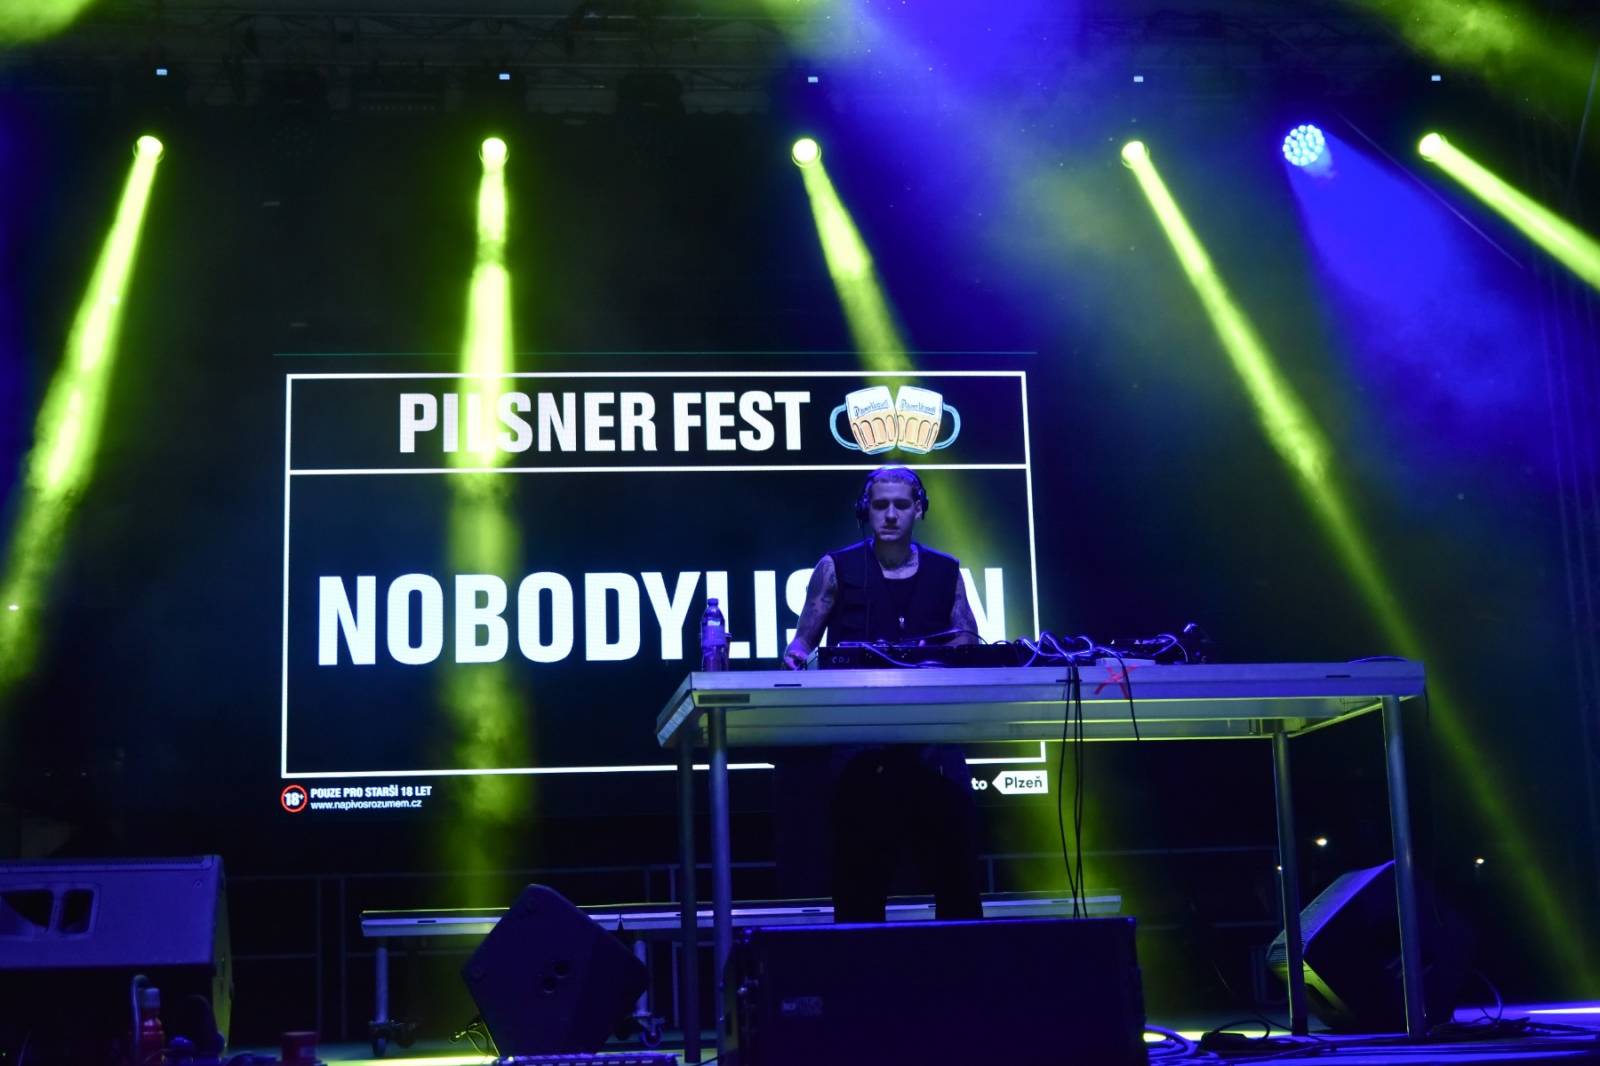 V Plzni oslavují pivo. První den se na Pilsner Festu představili Vypsaná fiXa, Polemic a DJ NobodyListen 